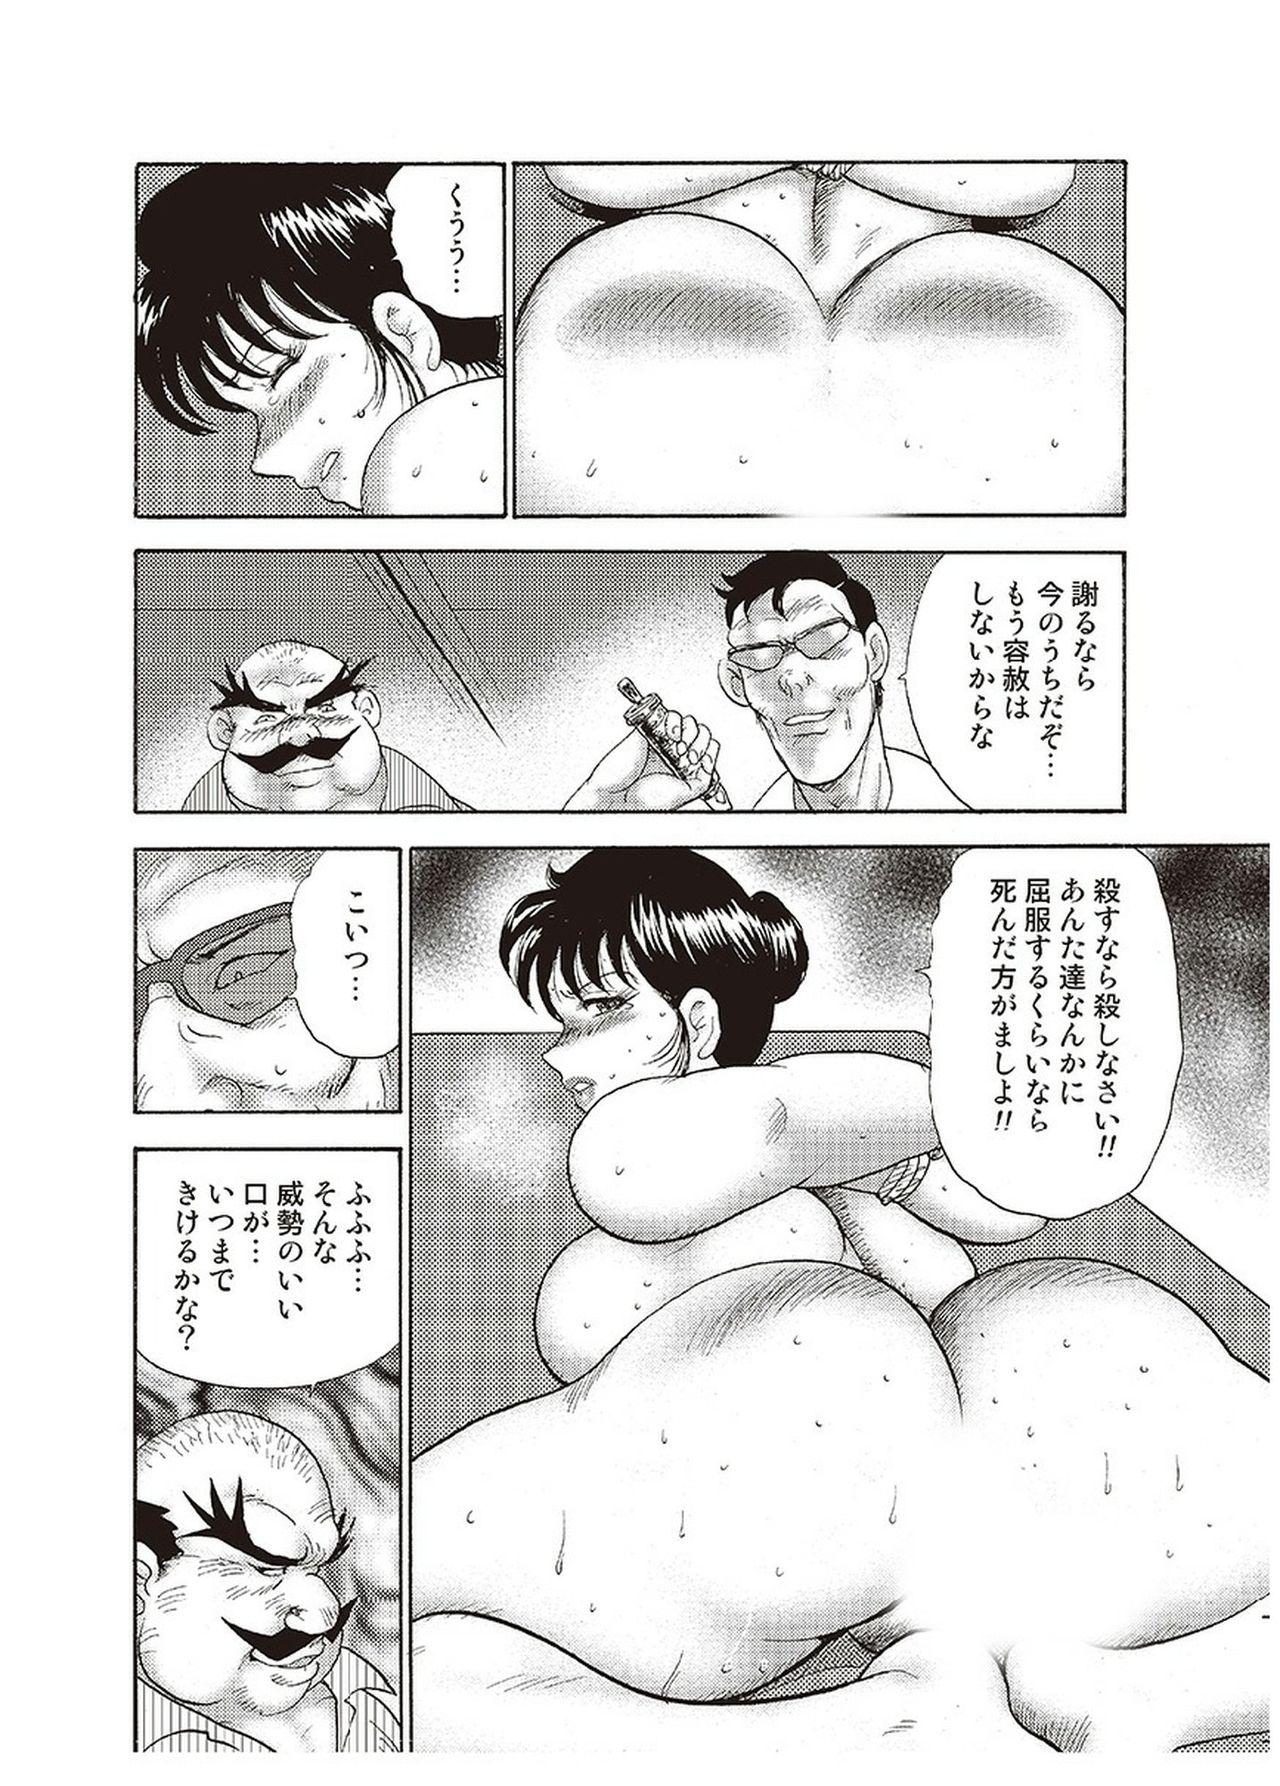 Man Maihime Chigoku no Ori Yon Negra - Page 167